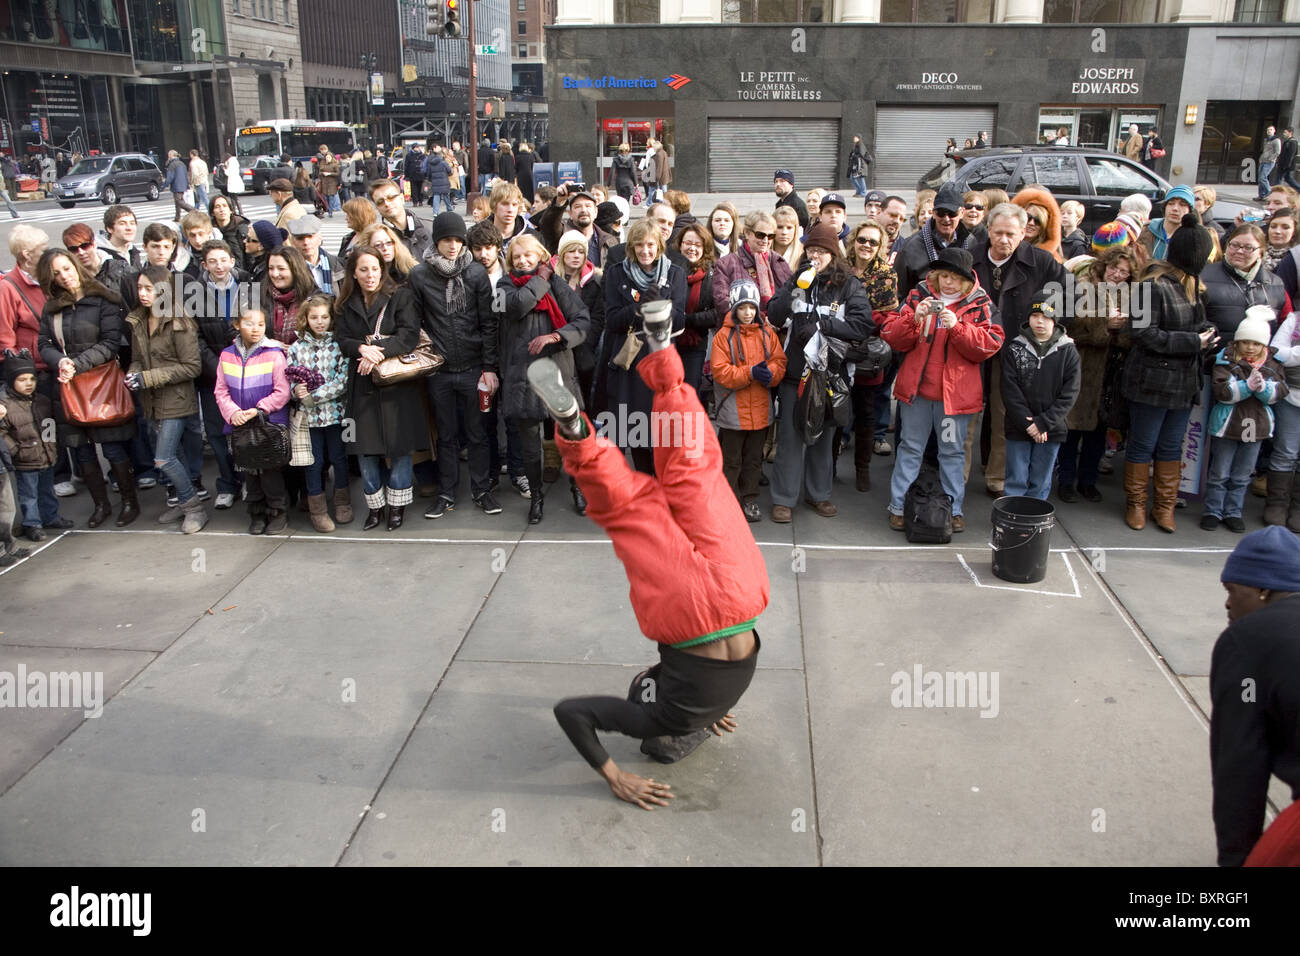 Romper bailarines entretener a las multitudes delante de la Biblioteca Pública de NY en la 5th Ave. durante la temporada de vacaciones en Nueva York. Foto de stock